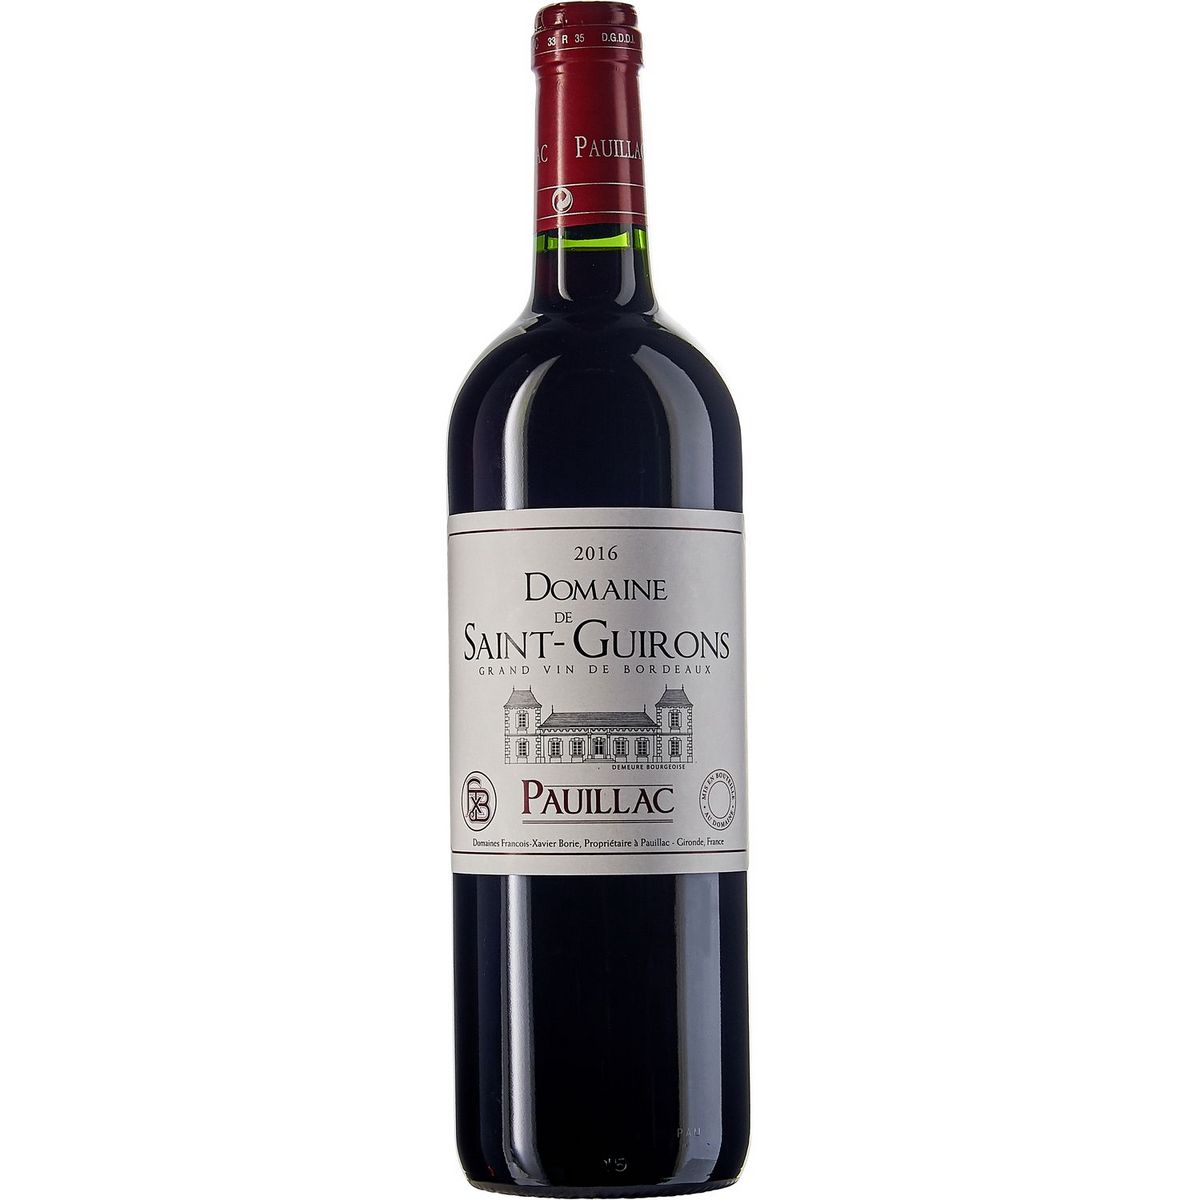 Vin rouge AOP Pauillac Domaine de Saint Guirons 2016 75cl